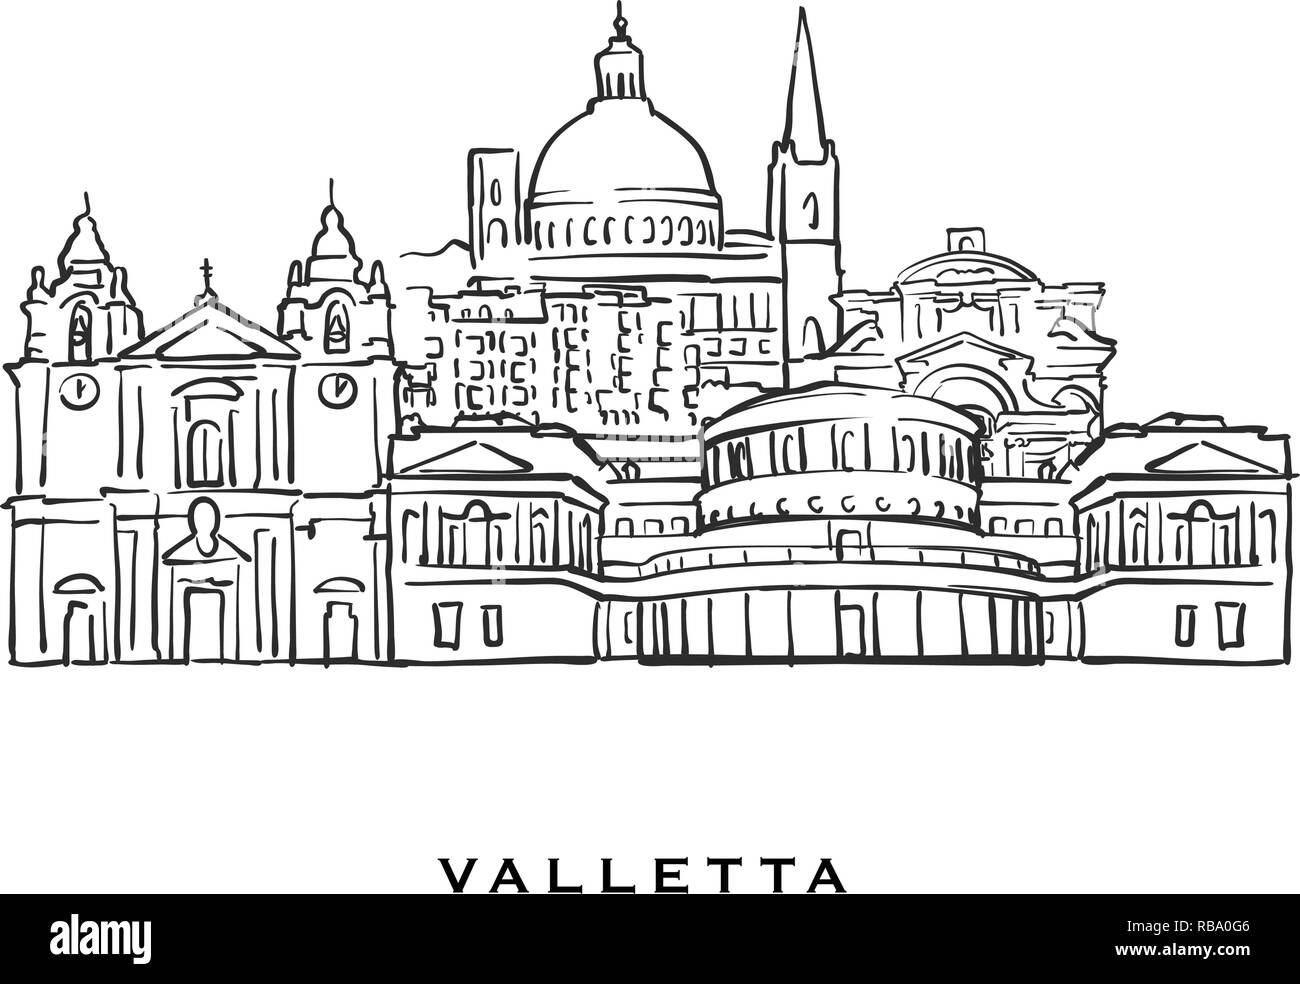 La Valletta Malta famosa architettura. Delineato lo schizzo di vettore separato su sfondo bianco. Disegni di architettura di tutte le capitali europee. Illustrazione Vettoriale